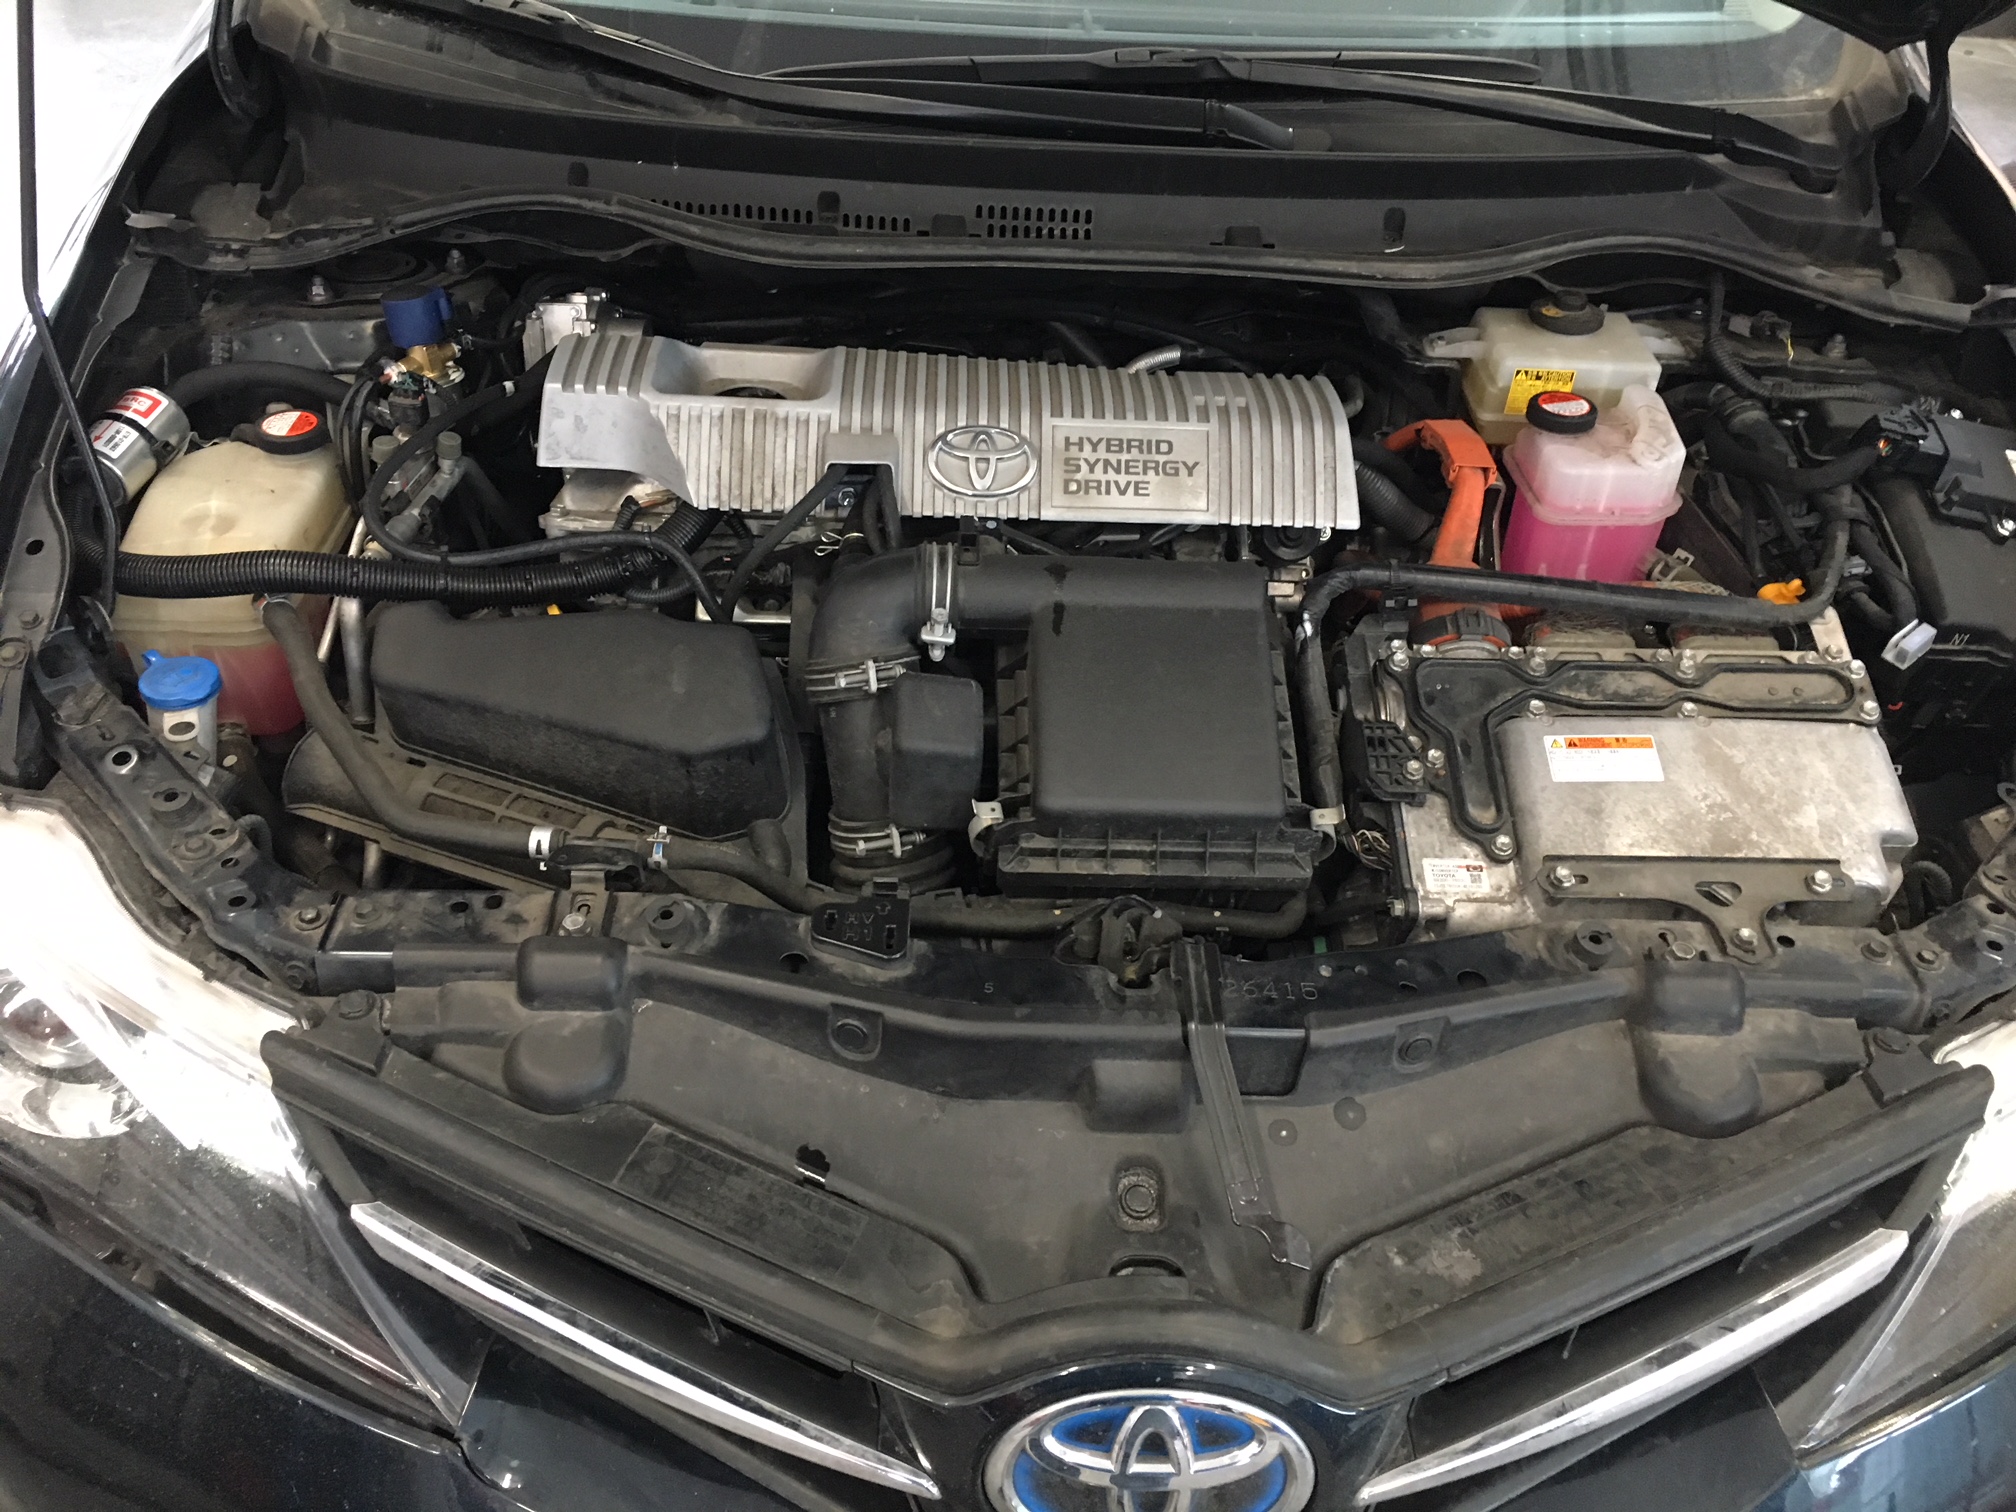 Toyota Auris silnik Auto Gaz, Warsztat samochodowy